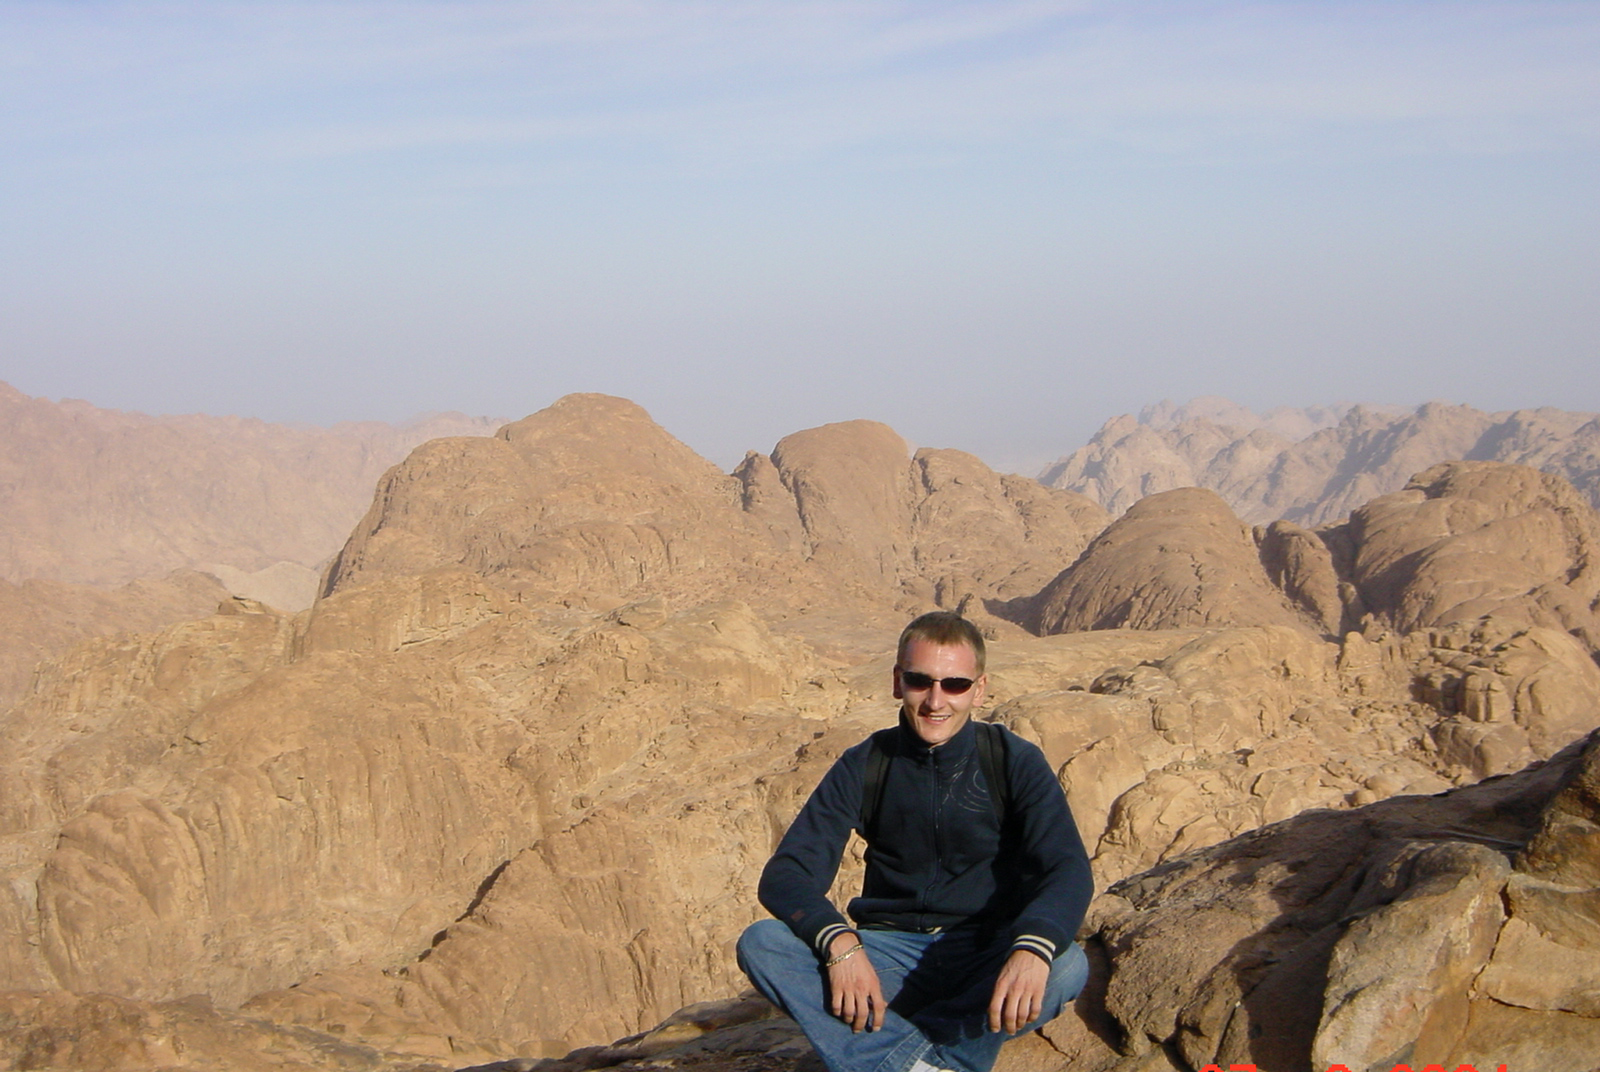  
Monte Sinaí Tour de Egipto